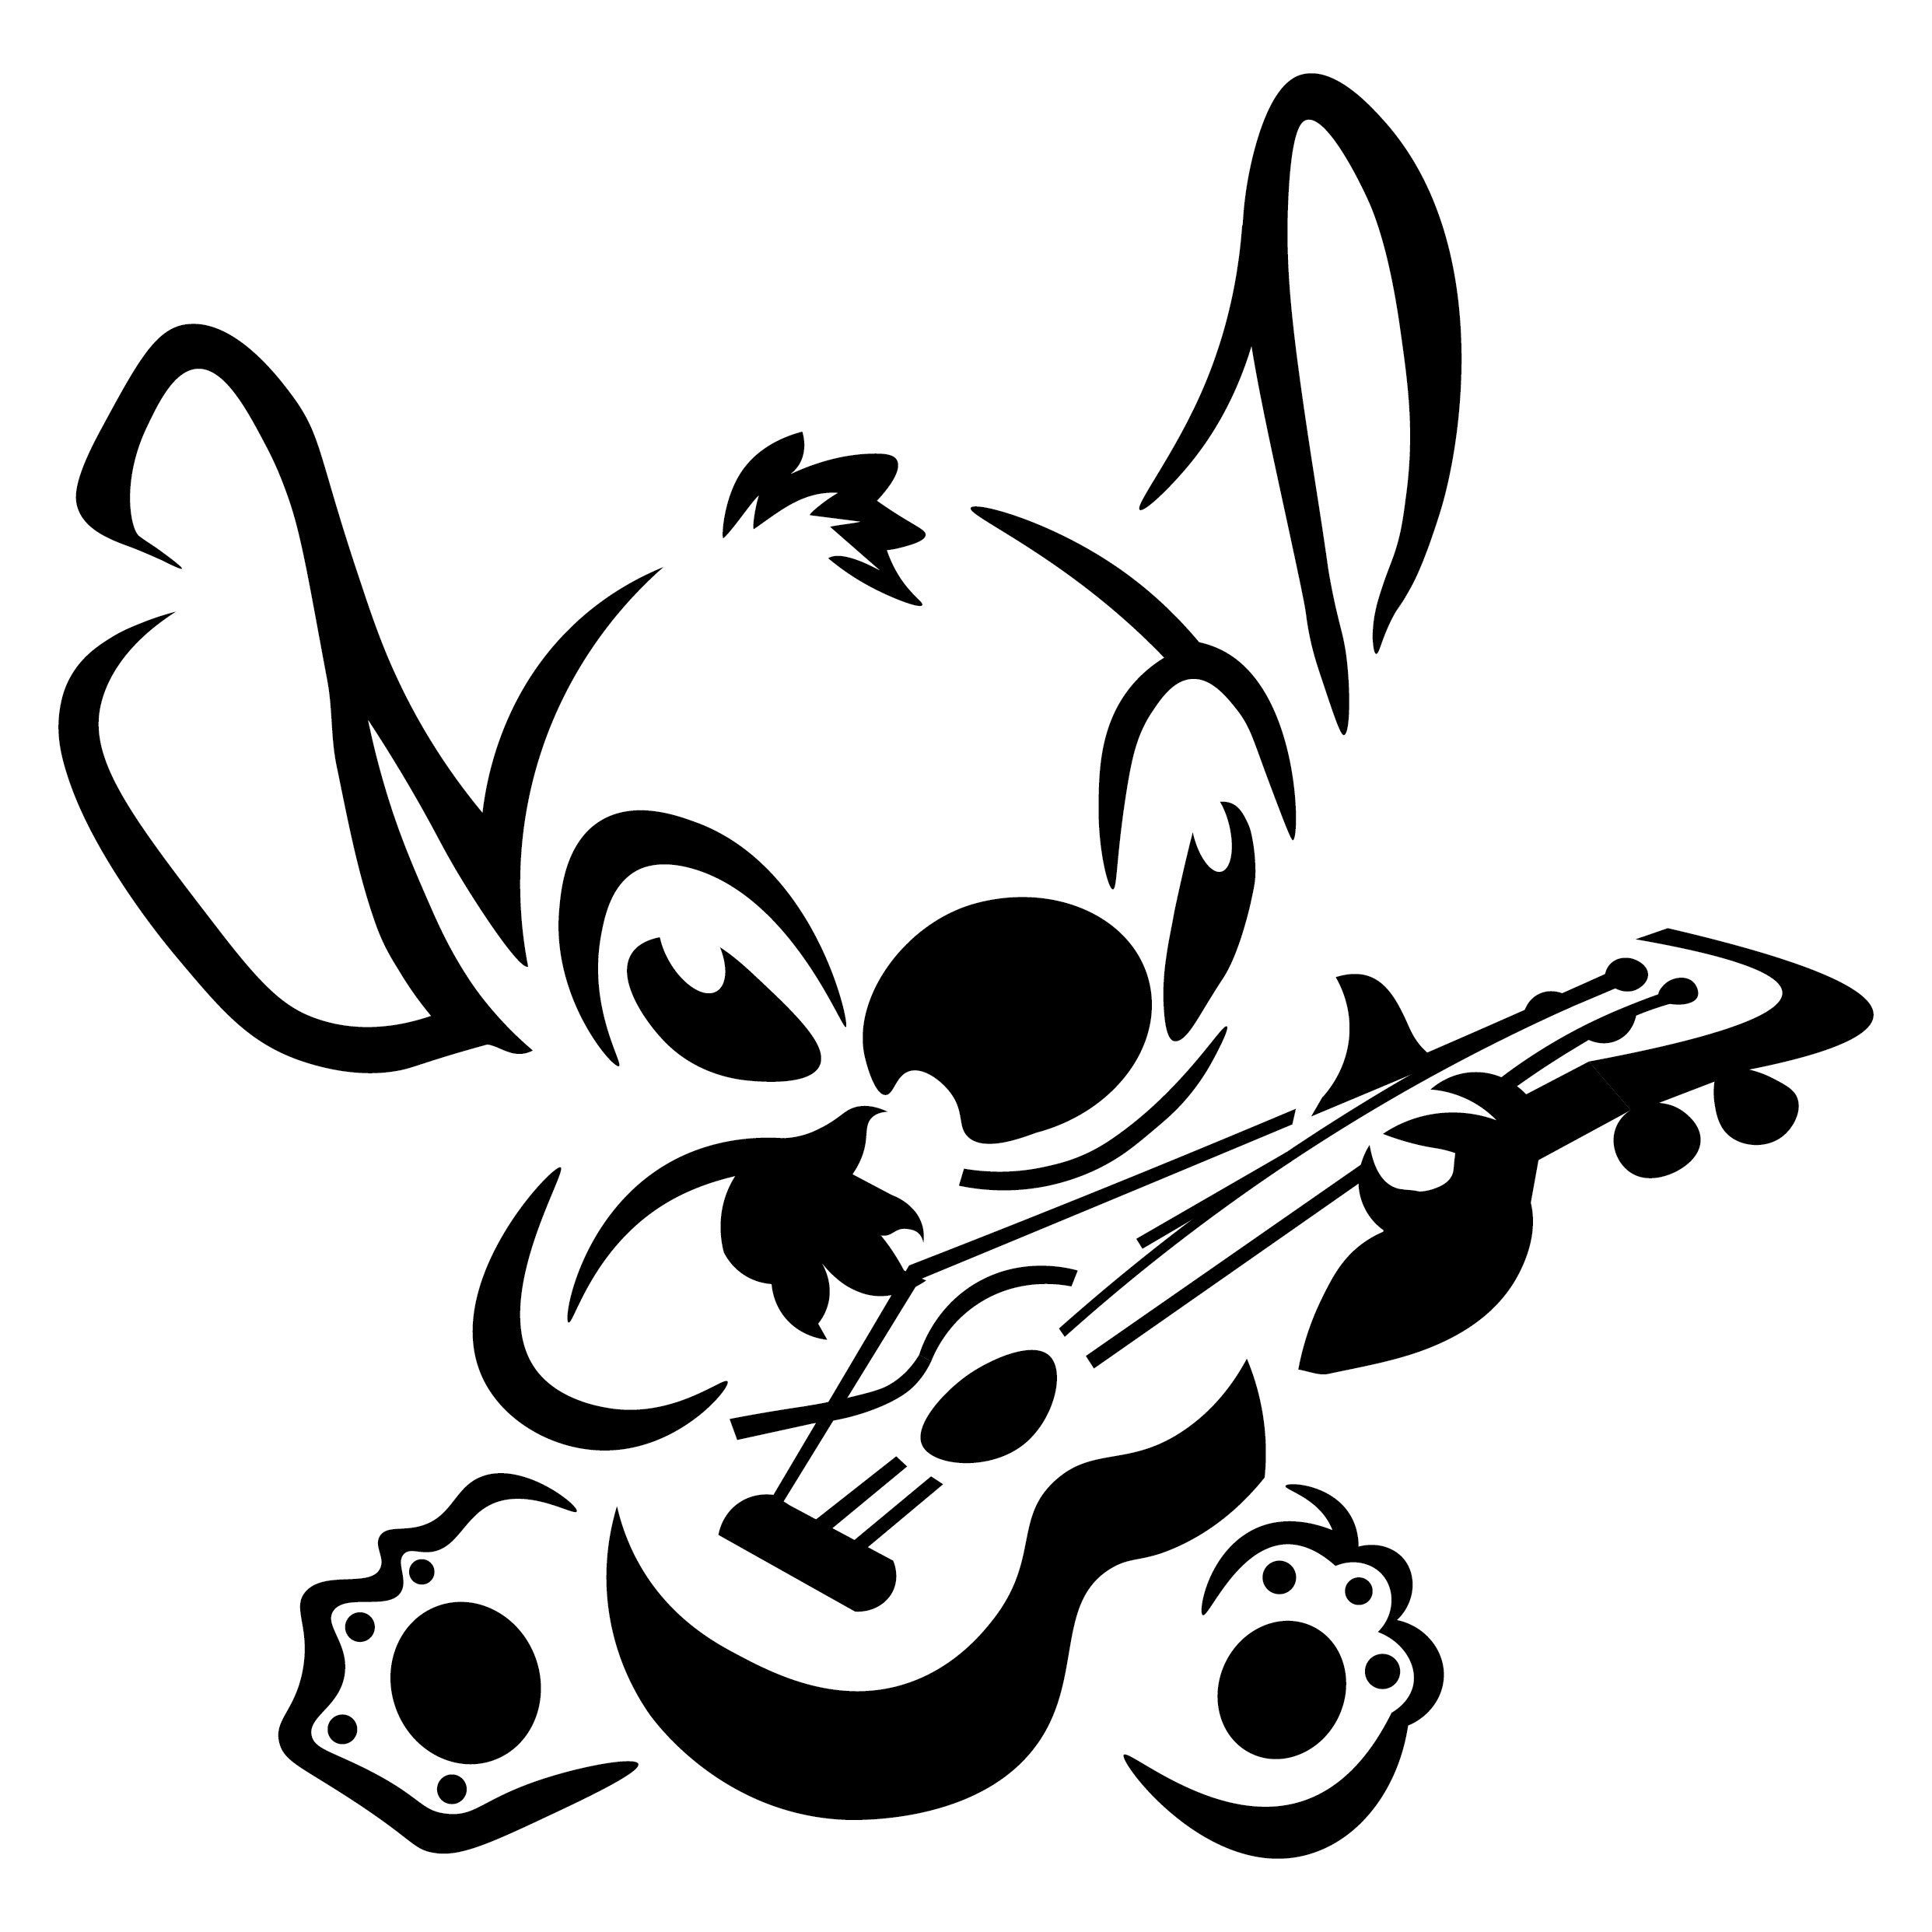 Download Stitch clipart ukulele, Stitch ukulele Transparent FREE for download on WebStockReview 2020